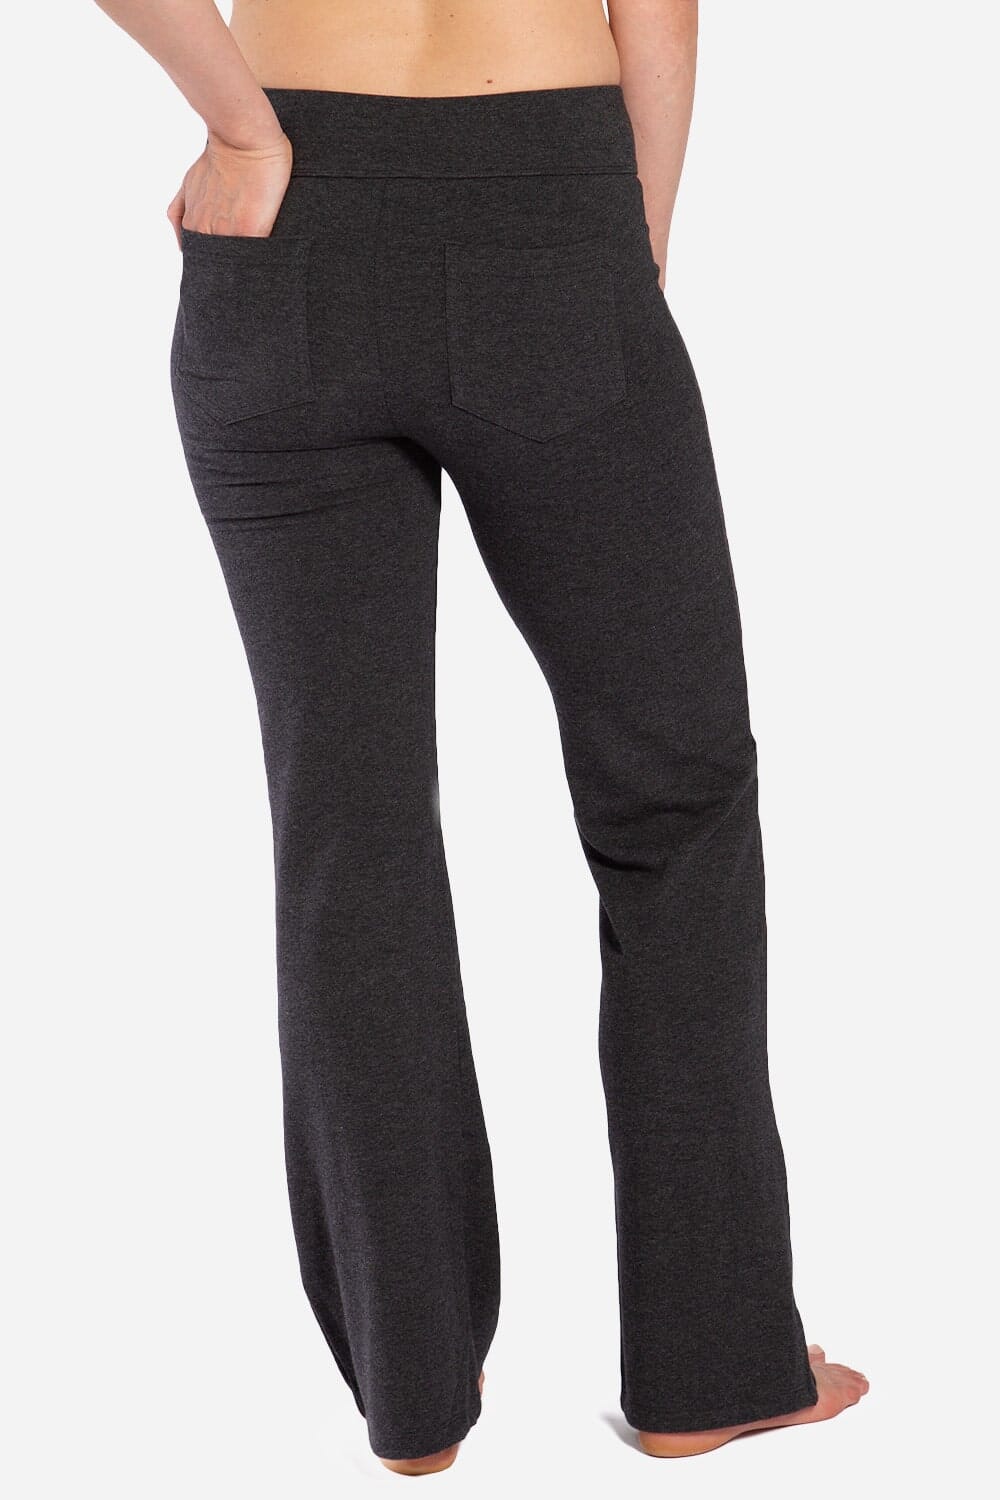 Buy NAVISKIN Women's Bootcut Yoga Pants Bootleg Pants Back Pockets